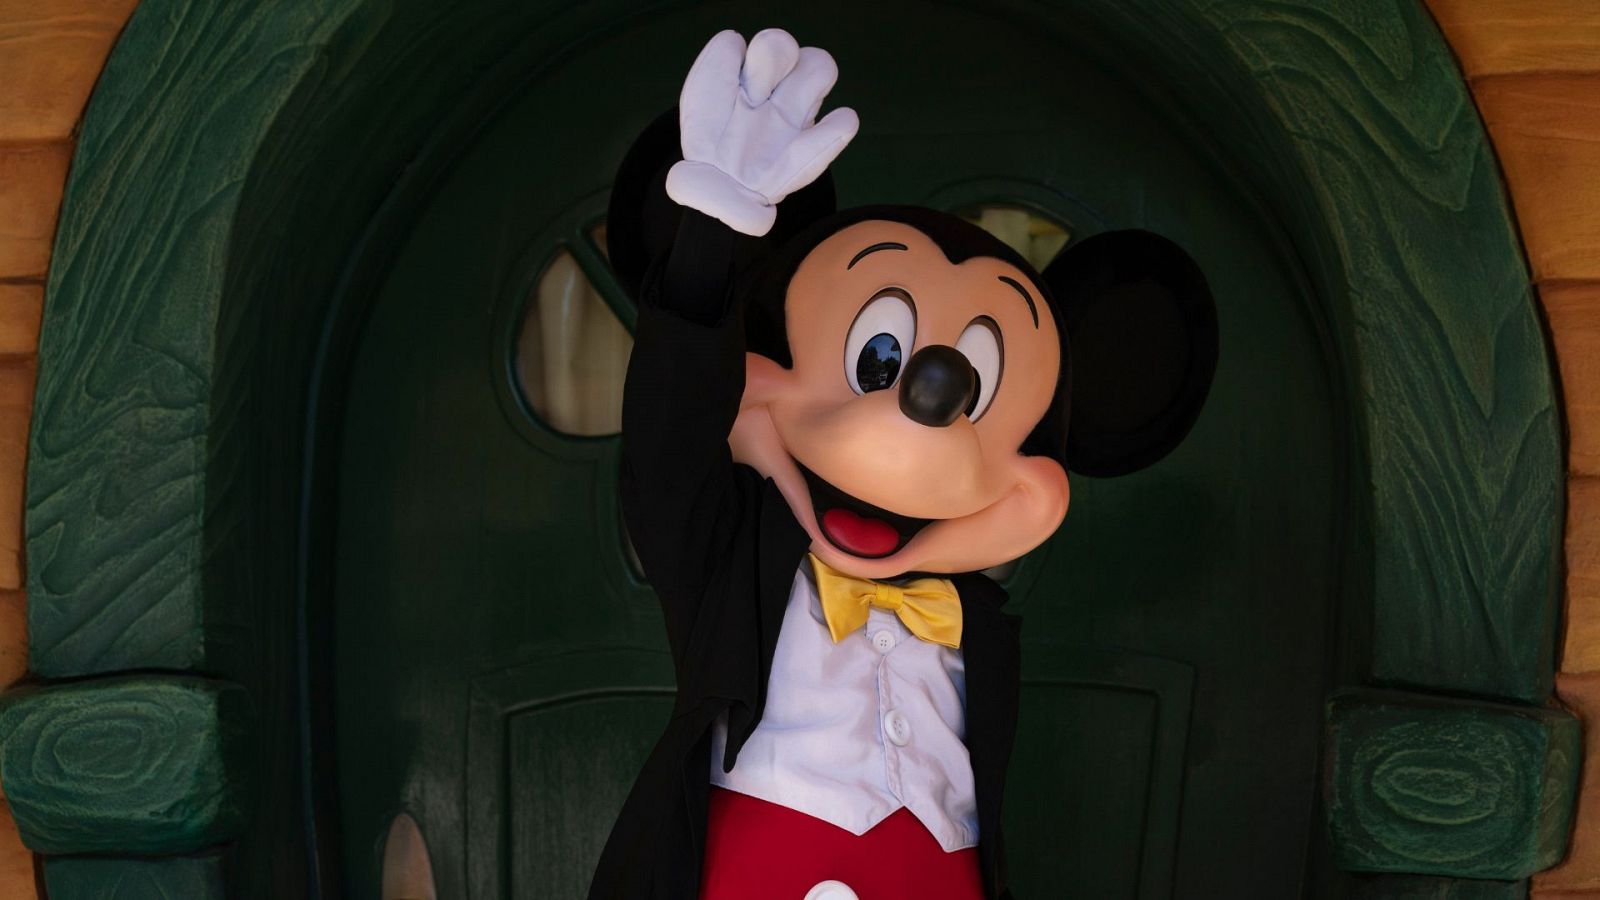 Gran roble torpe Bendecir Mickey Mouse se emancipa: Disney se quedará sin derechos del ratón